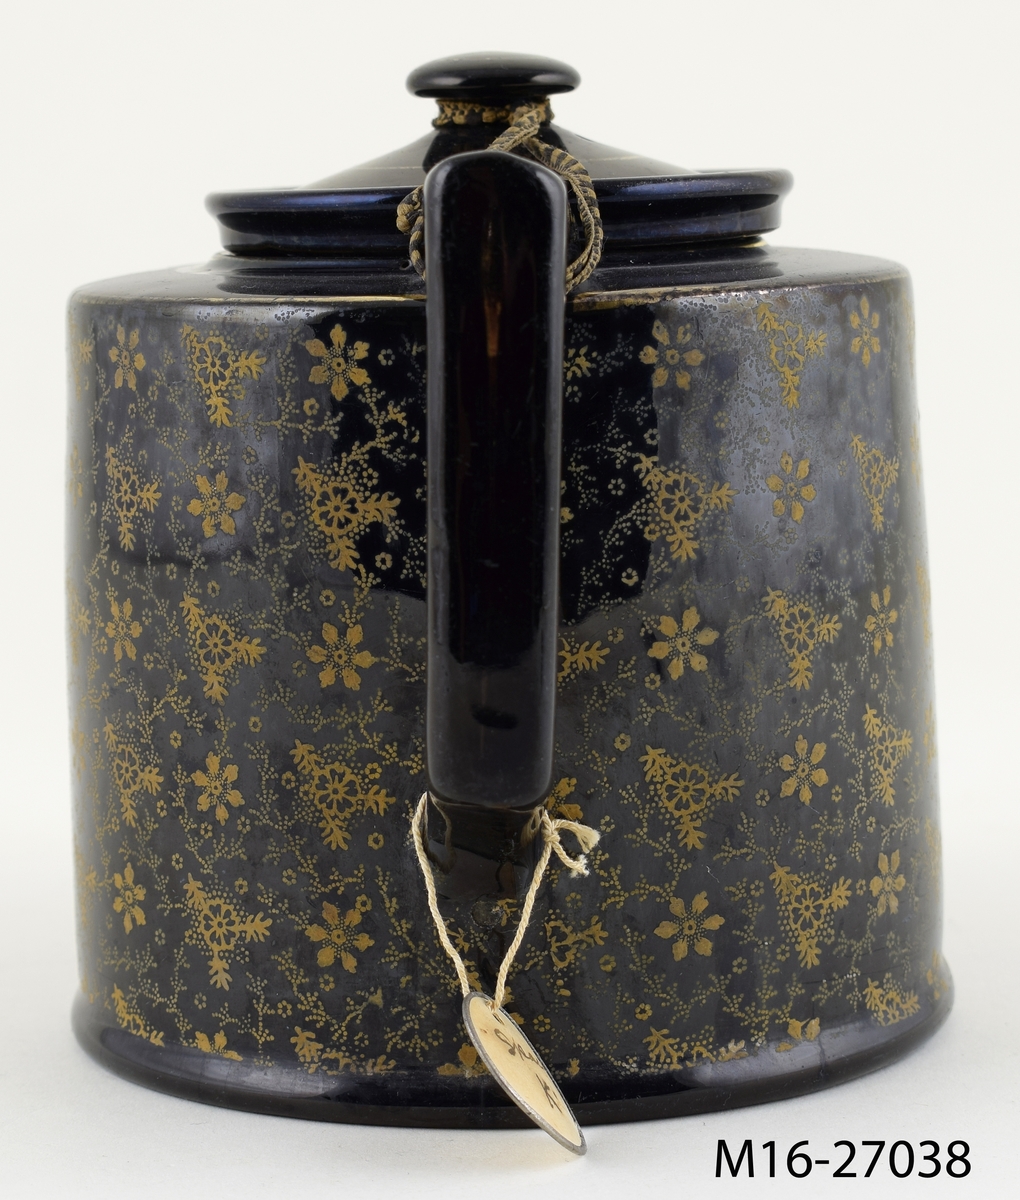 Tekanna, svart med tryckt småmönstrad dekor i brons/guld på de vertikala sidorna.